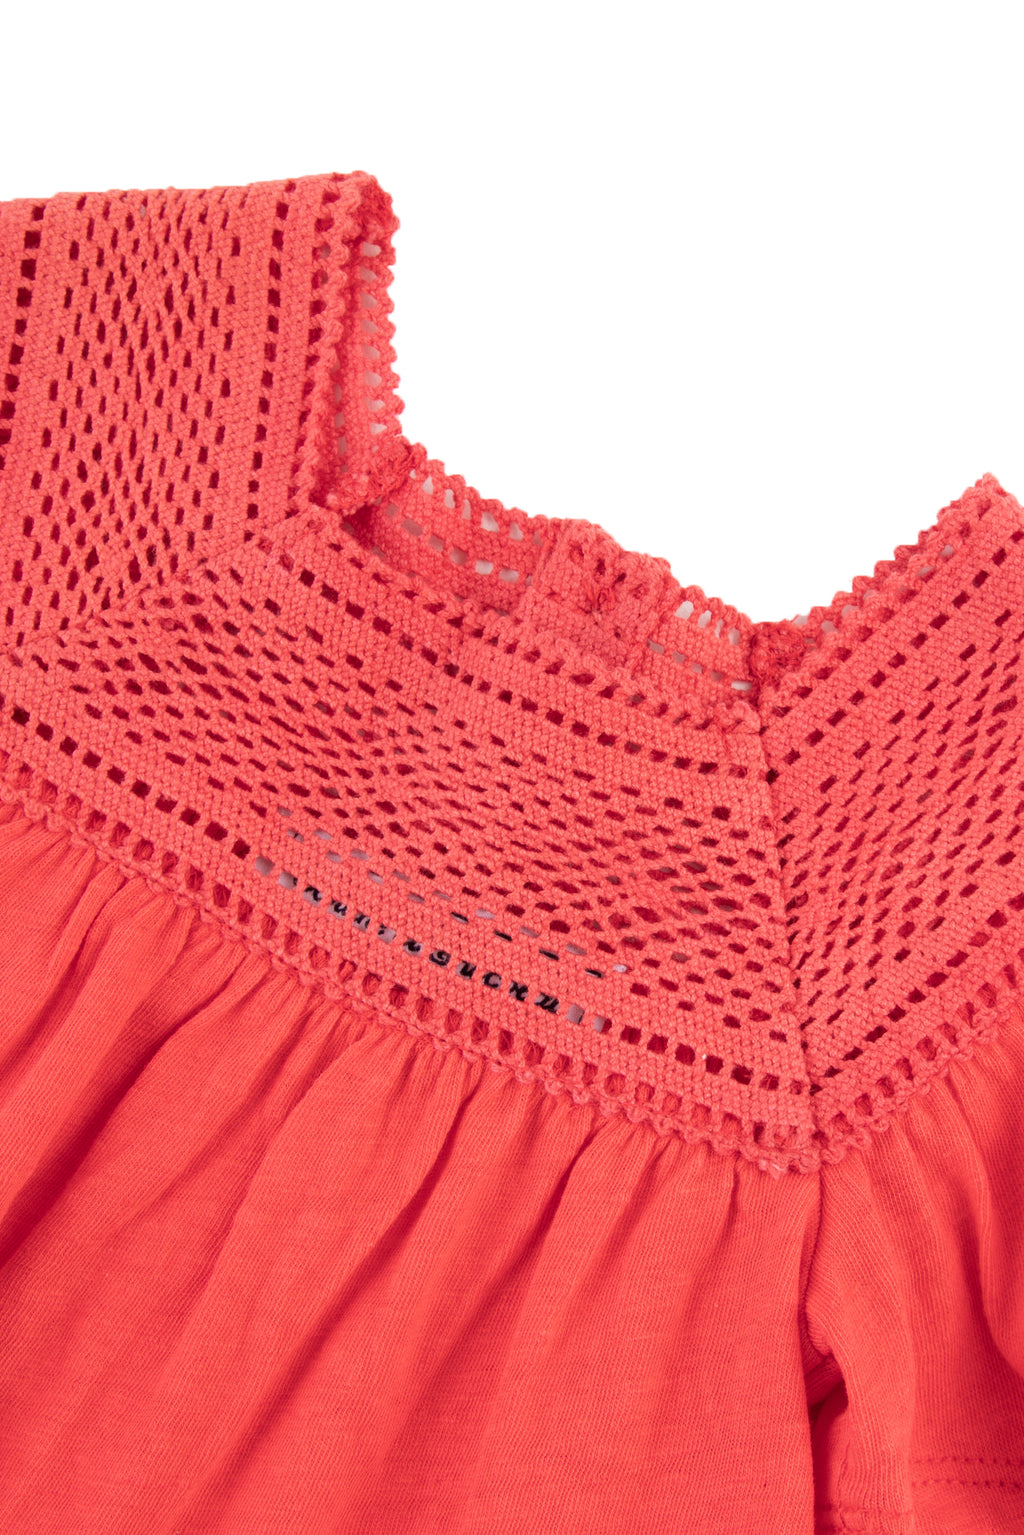 Camiseta - Rojo gancho de algodón